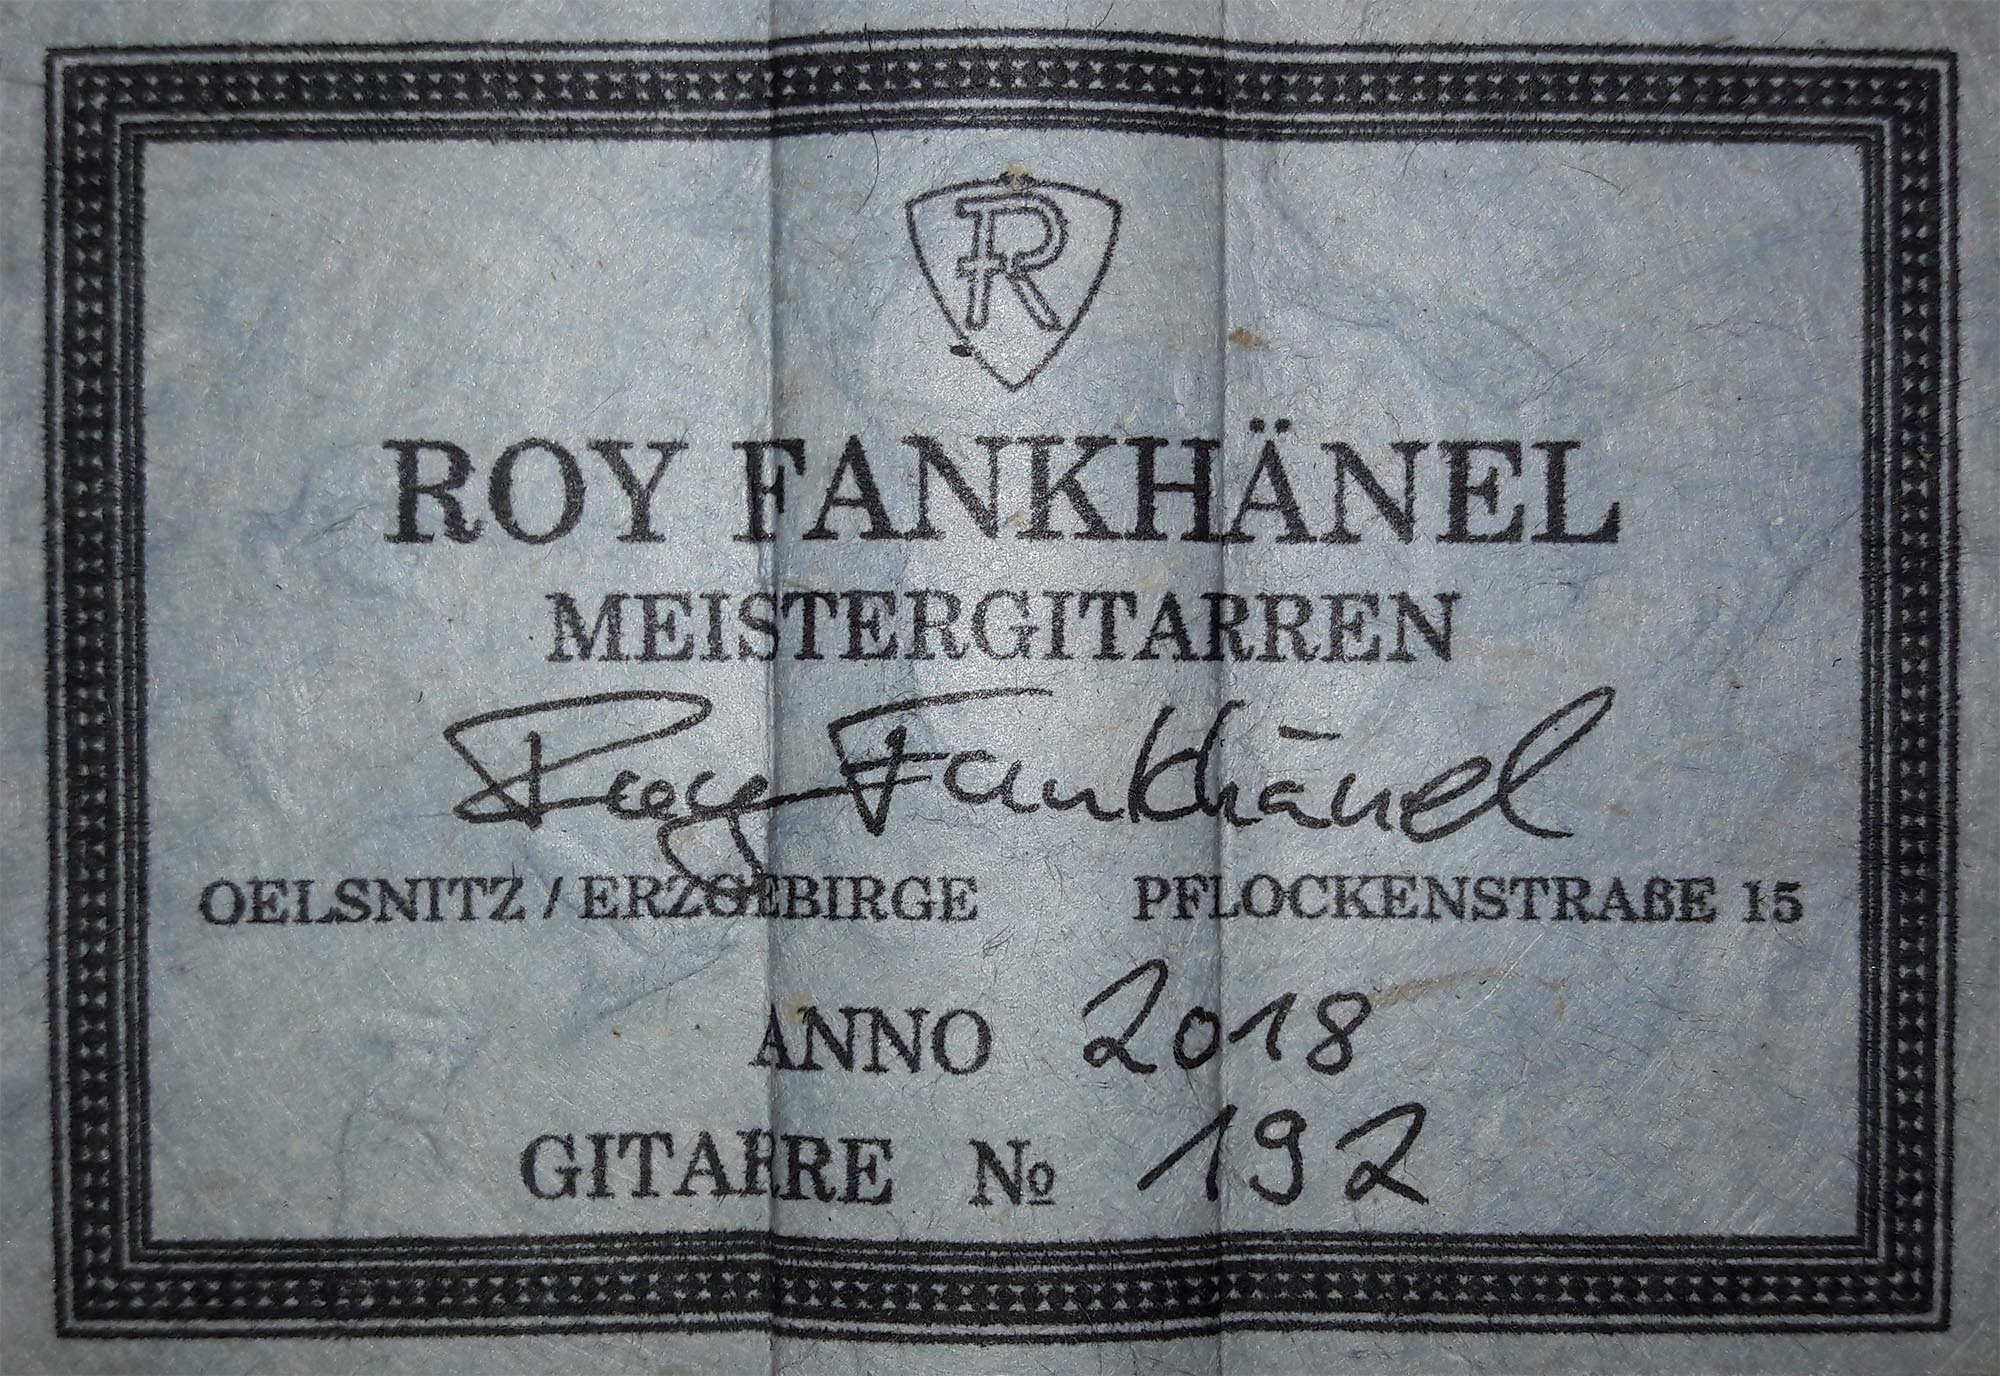 a roy fankhänel 192 zeder 2018 29062018 label